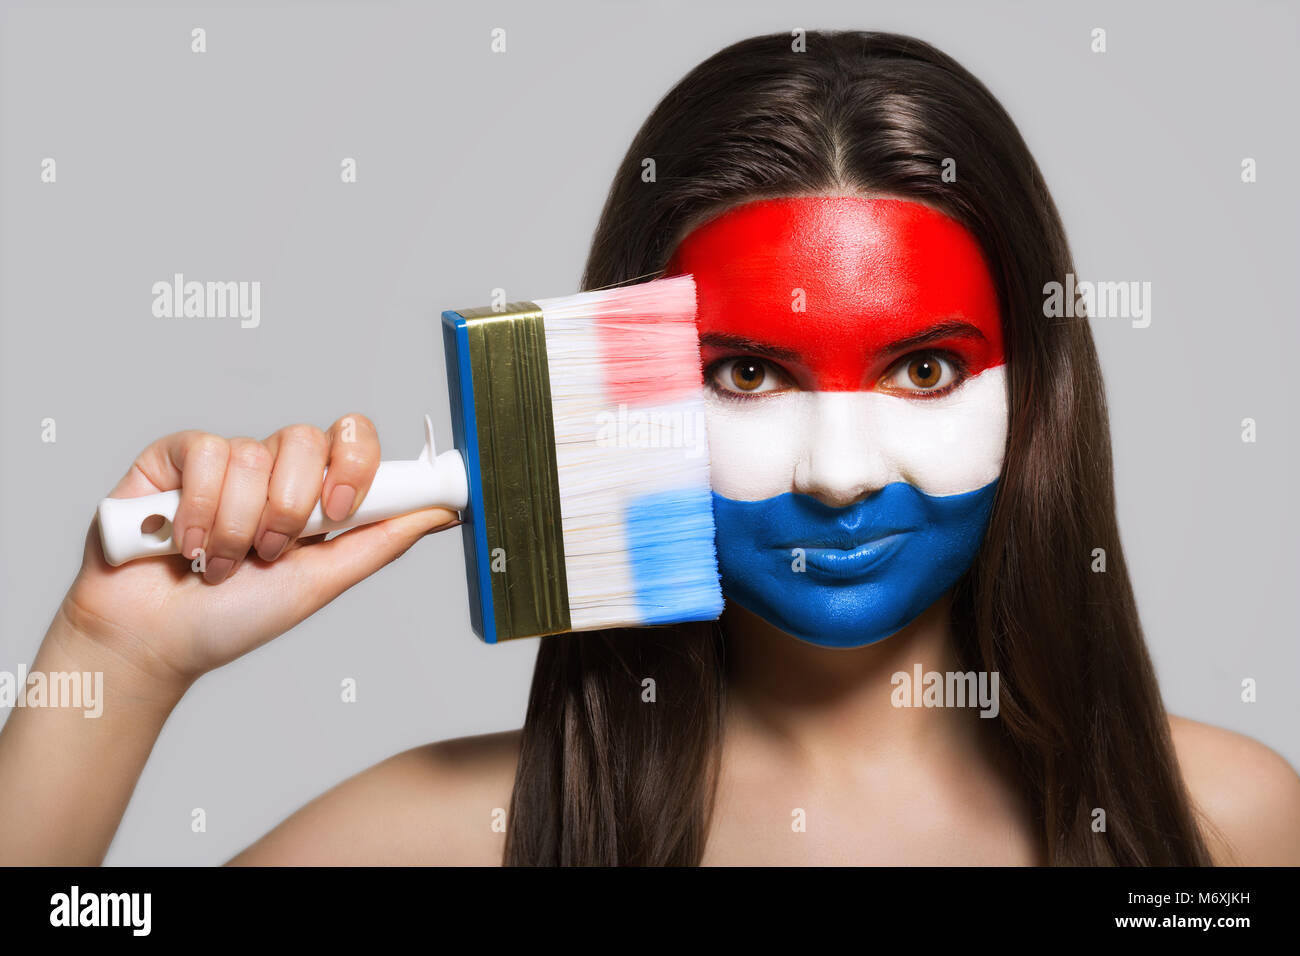 Supportrice en couleurs nationales des Pays-Bas Banque D'Images